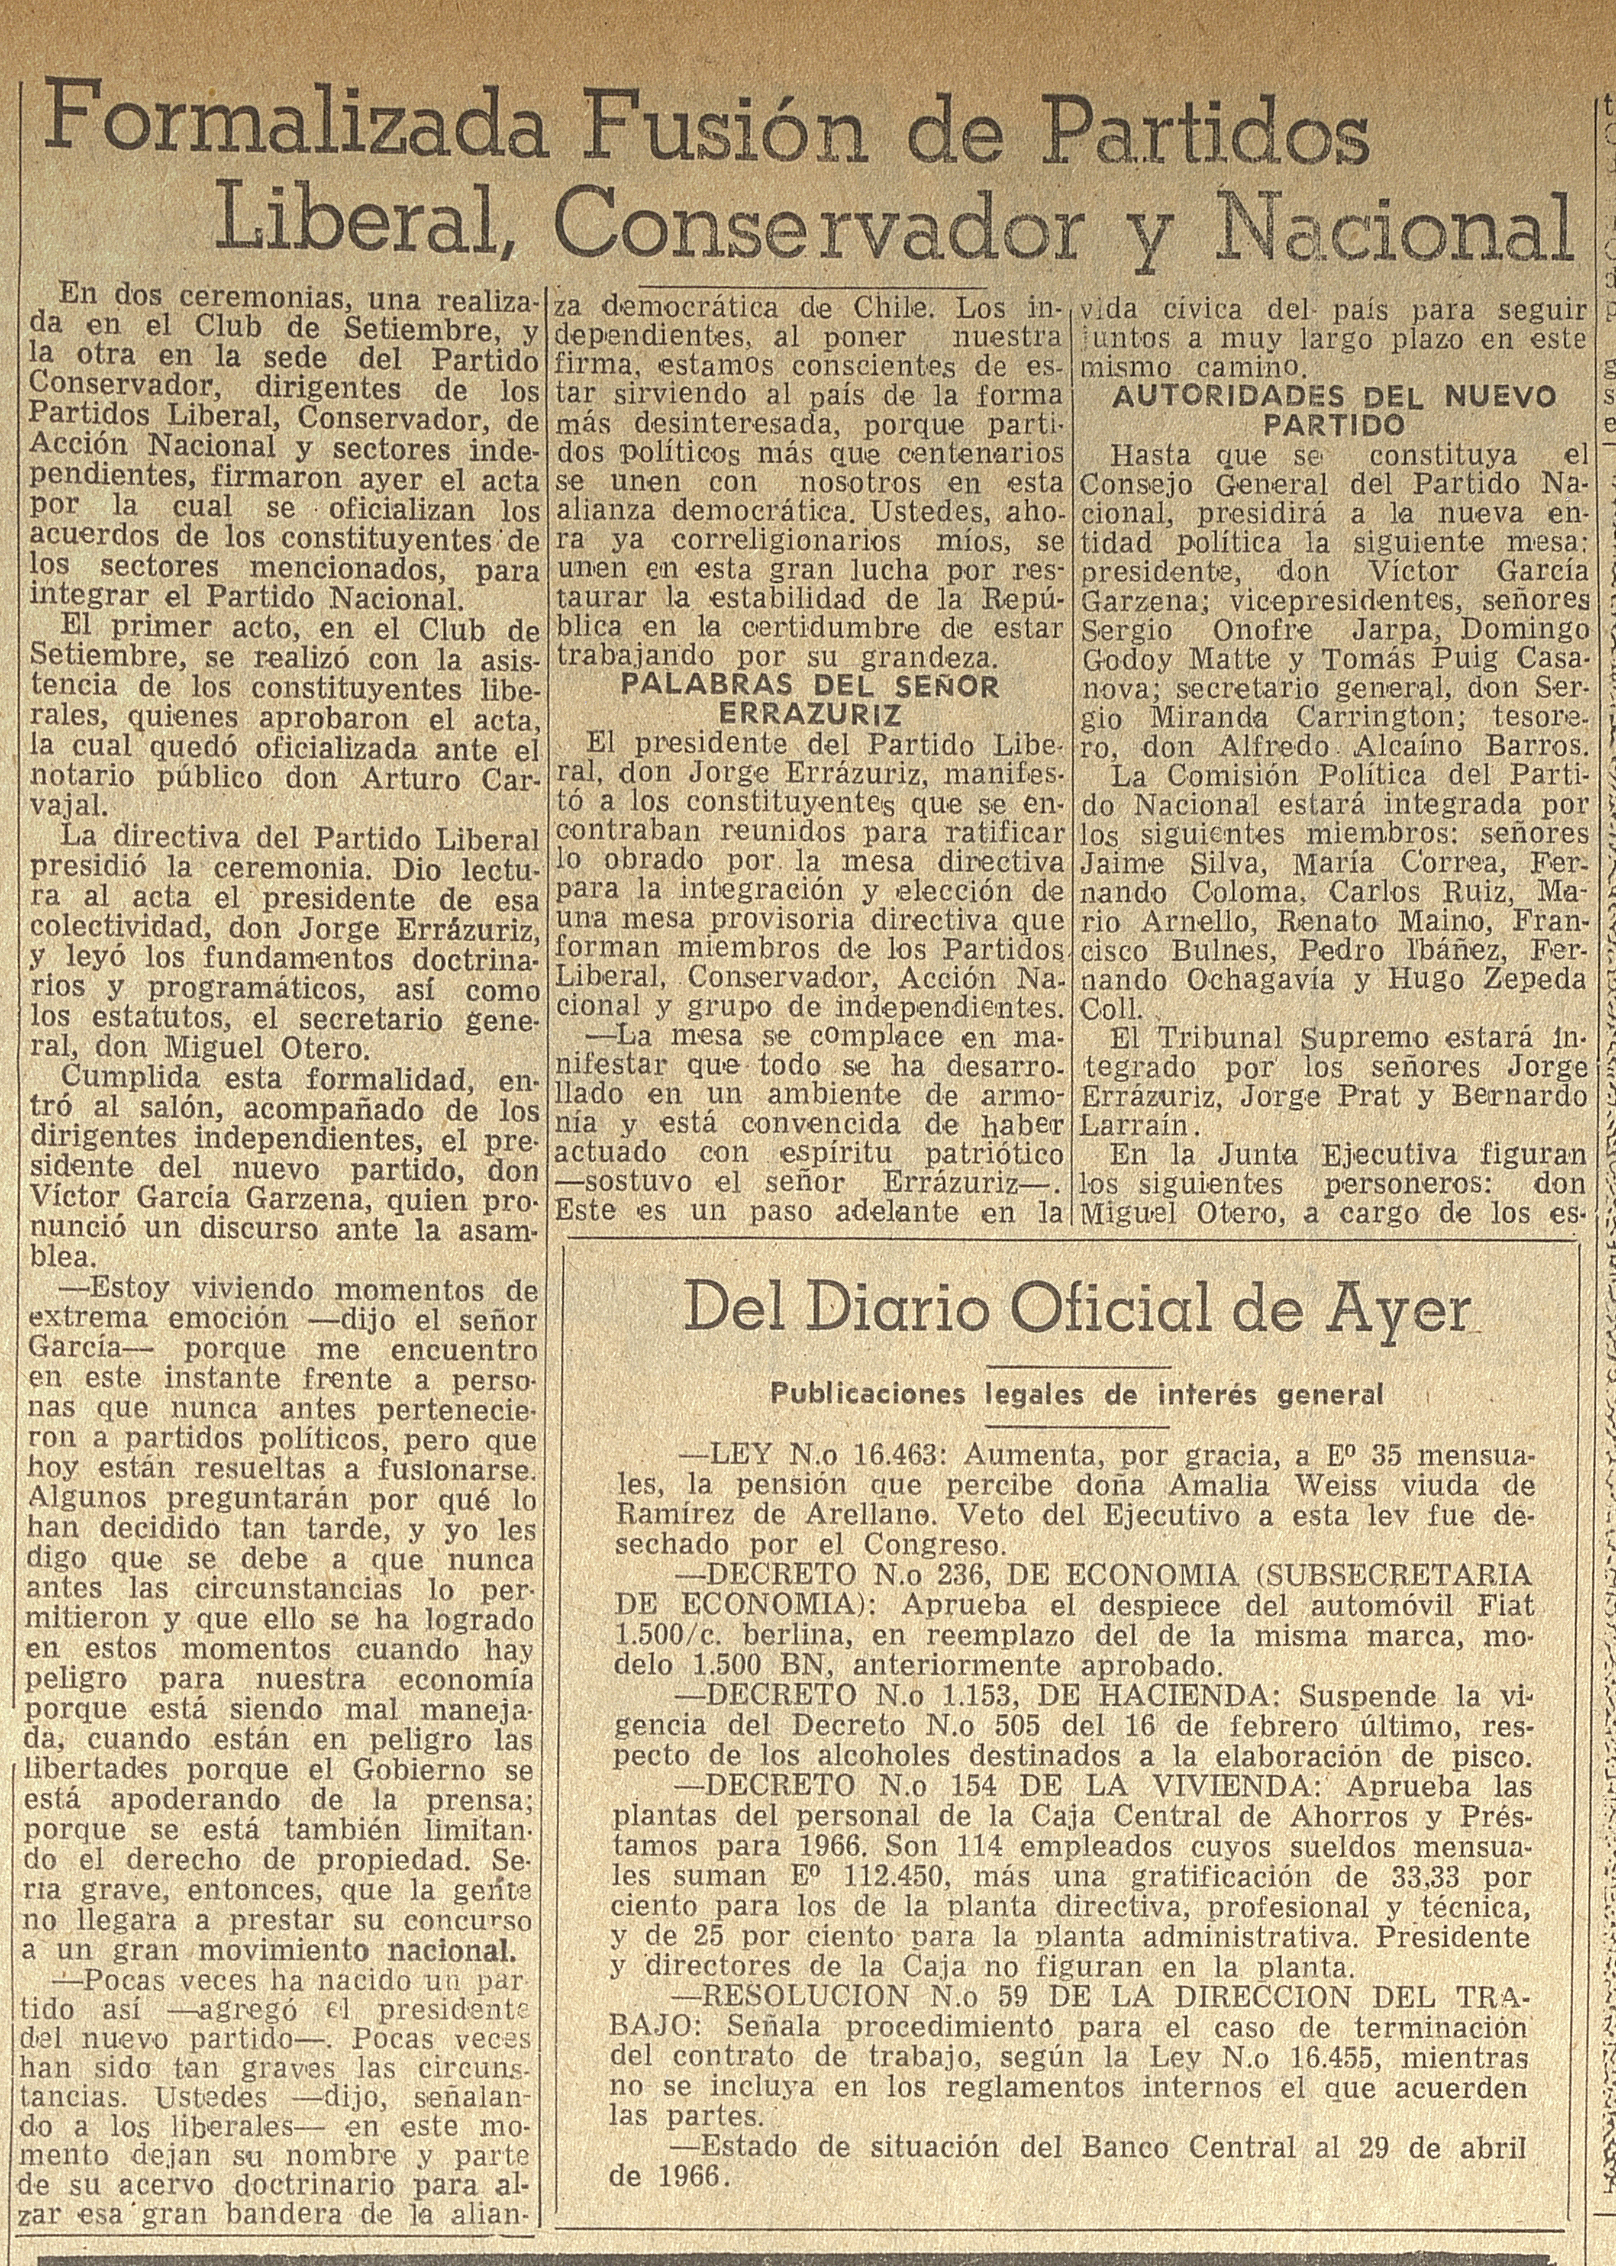 "Formalizada fusión de Partidos Liberal, Conservador y Nacional", El Mercurio, Santiago, miércoles 11 de mayo de 1966.